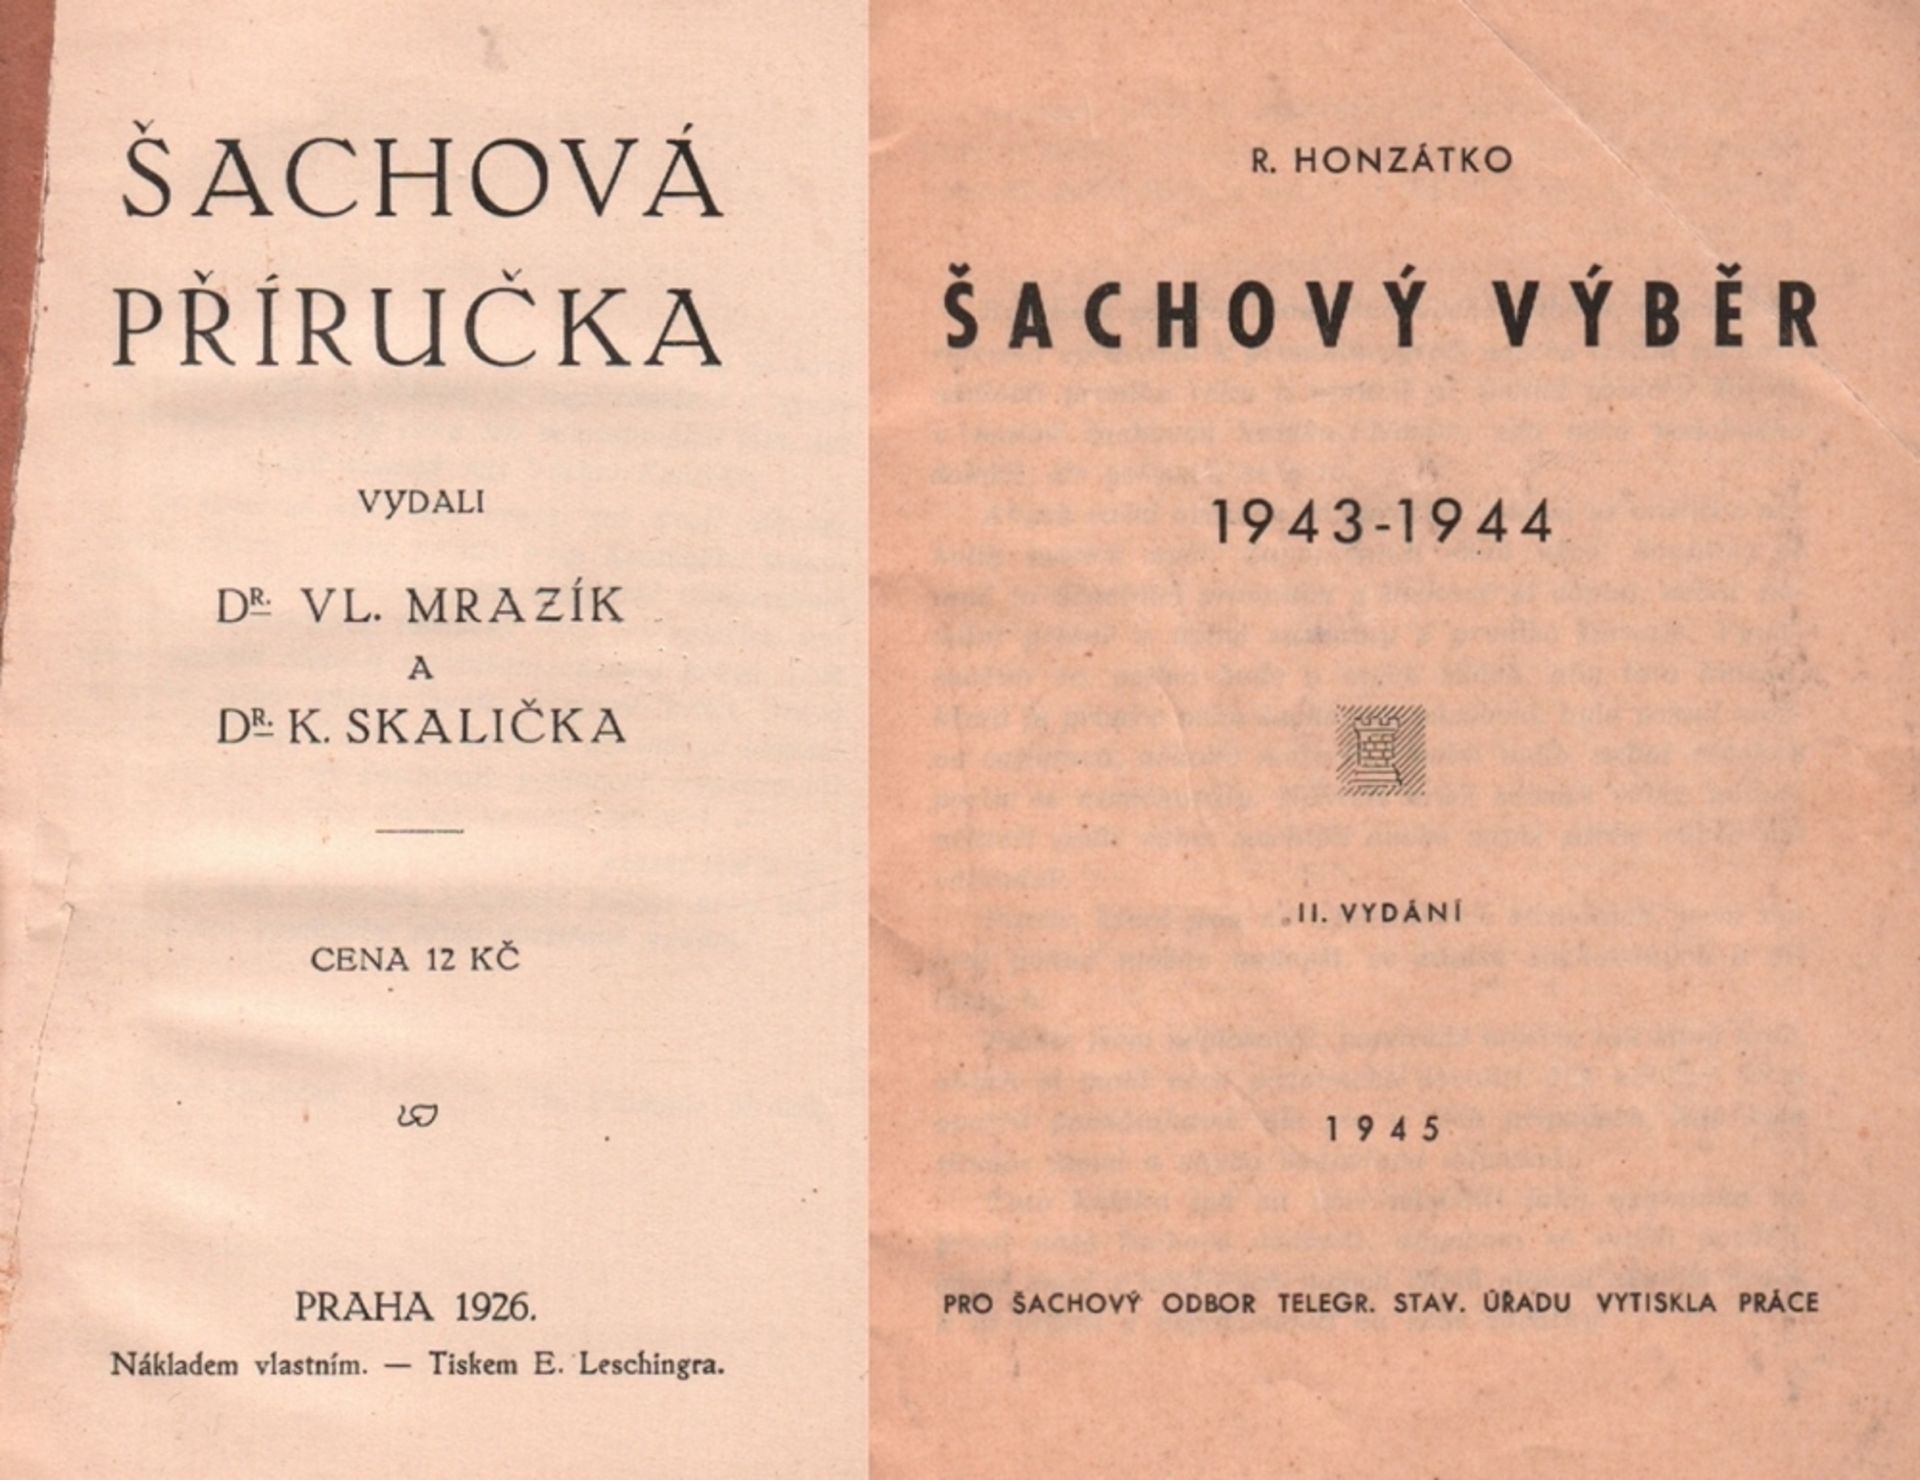 Mrazik, V. und K. Skalicka. Sachová prírucka. Prag, Leschingra, 1926. 8°. 115 Seiten, 1 Bl.